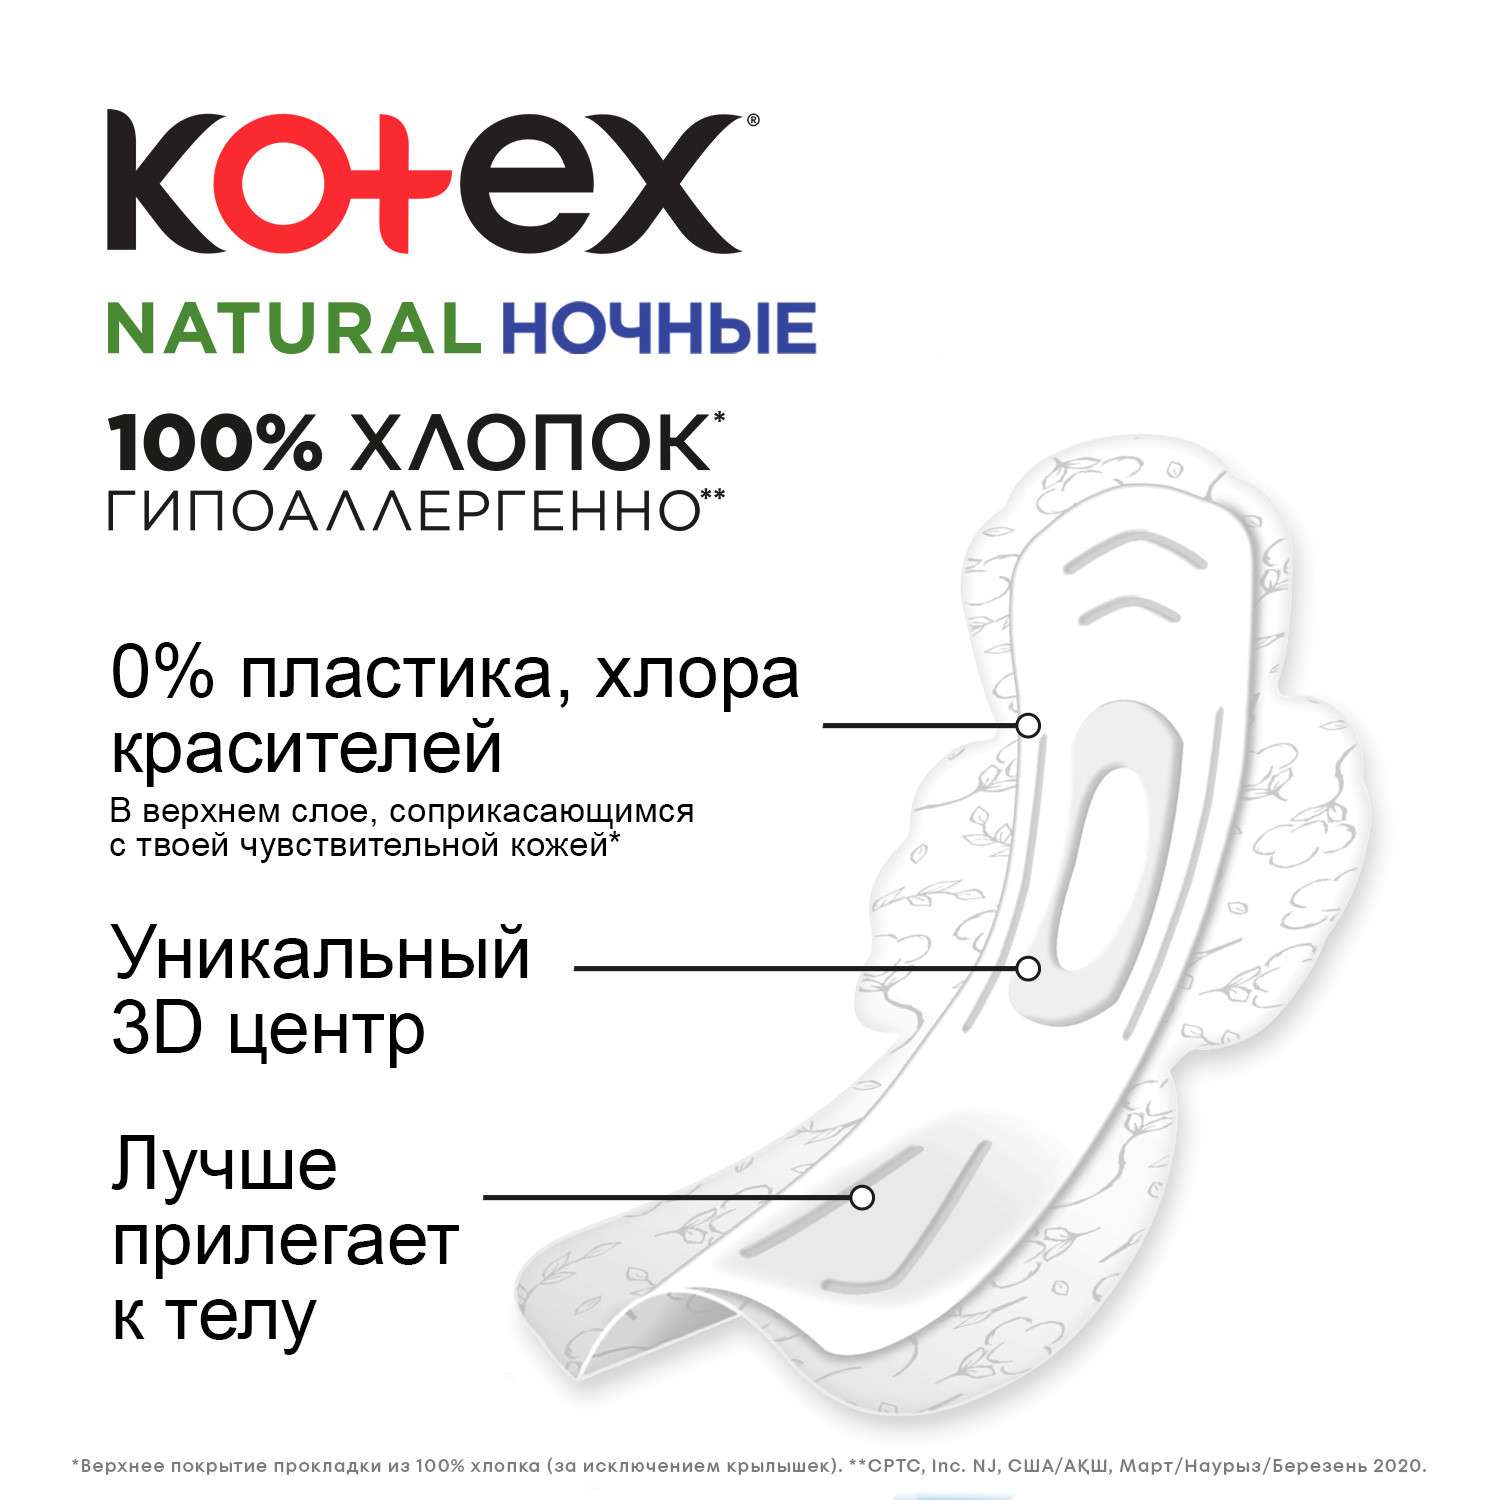 Прокладки KOTEX Natural ночные 12шт - фото 6